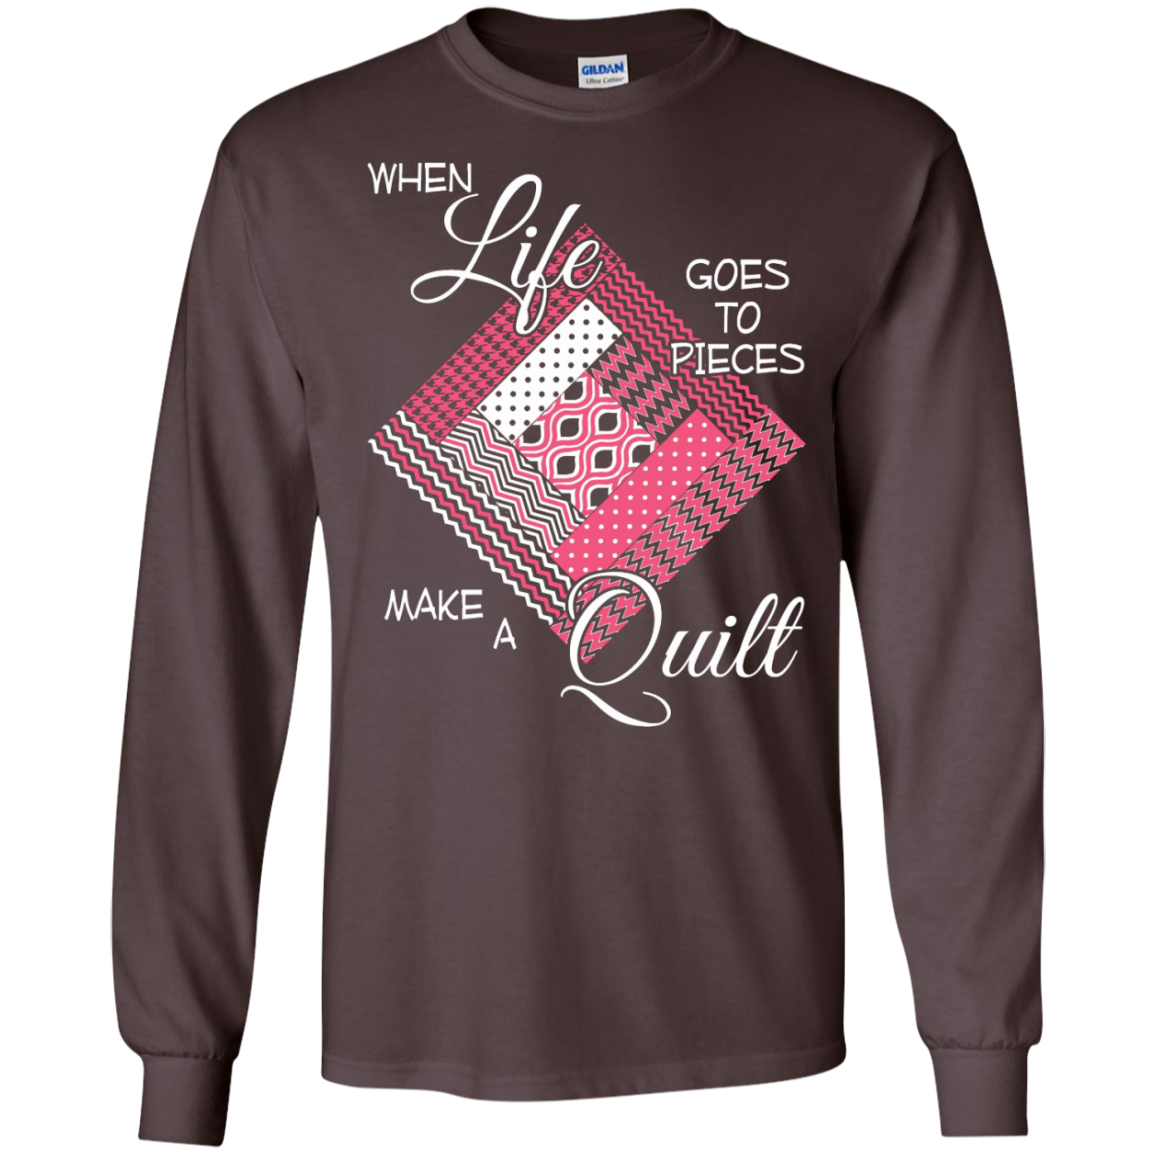 Make a Quilt (pink) Long Sleeve Ultra Cotton T-Shirt - Crafter4Life - 3